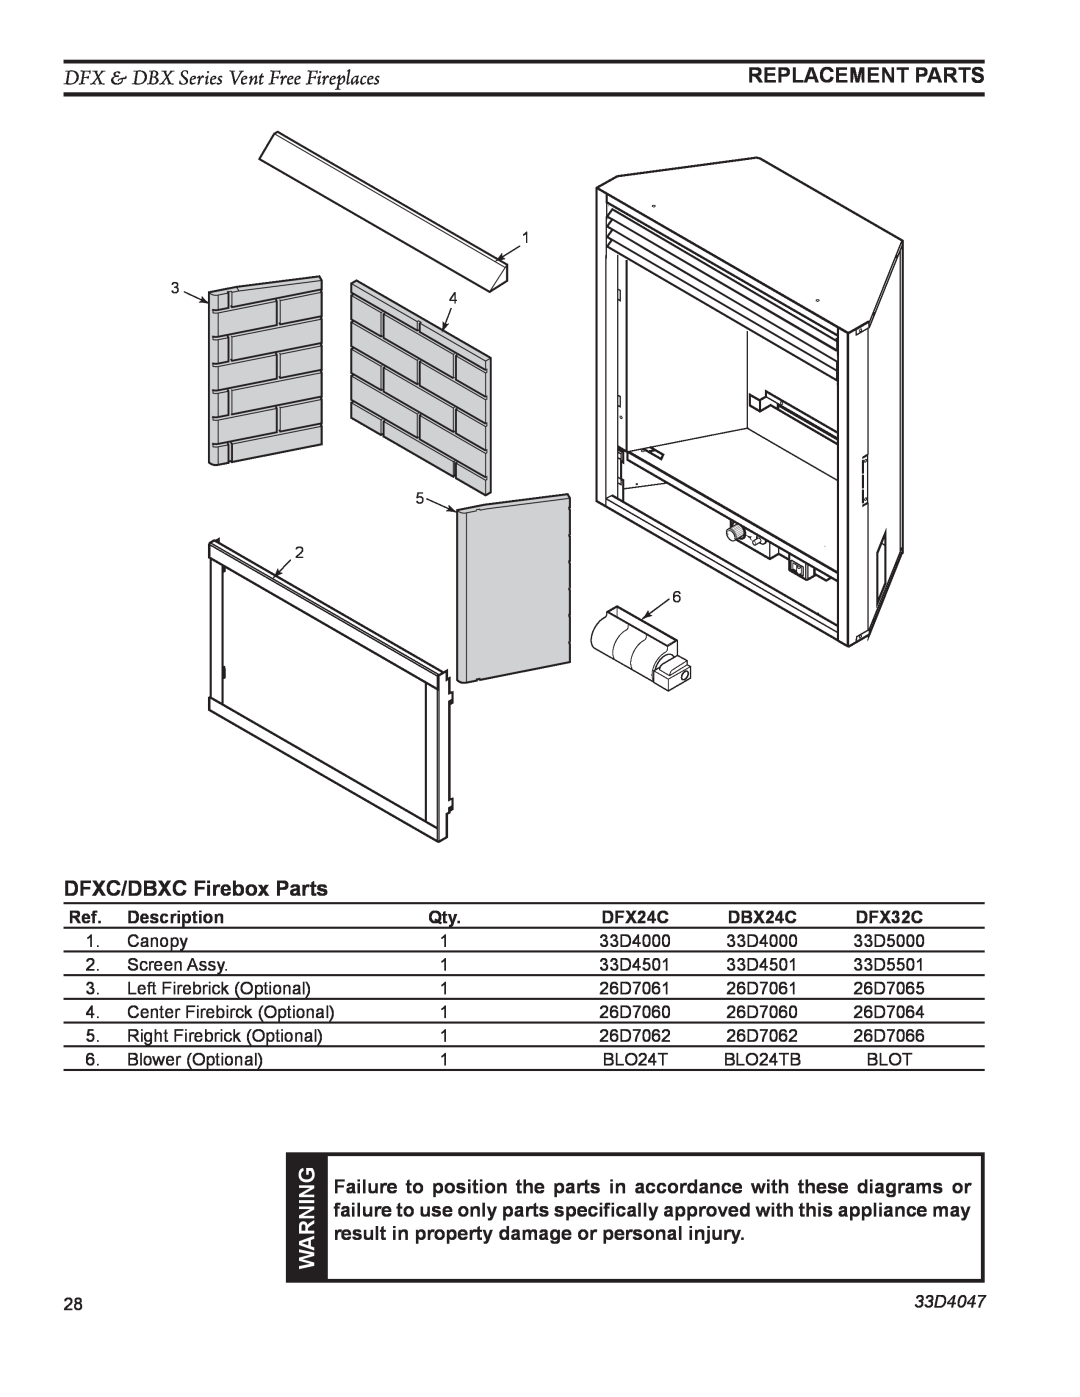 Monessen Hearth DBX24C manual DFX & DBX Series Vent Free Fireplaces, DFXC/DBXC Firebox Parts, Replacement Parts, 33D4047 